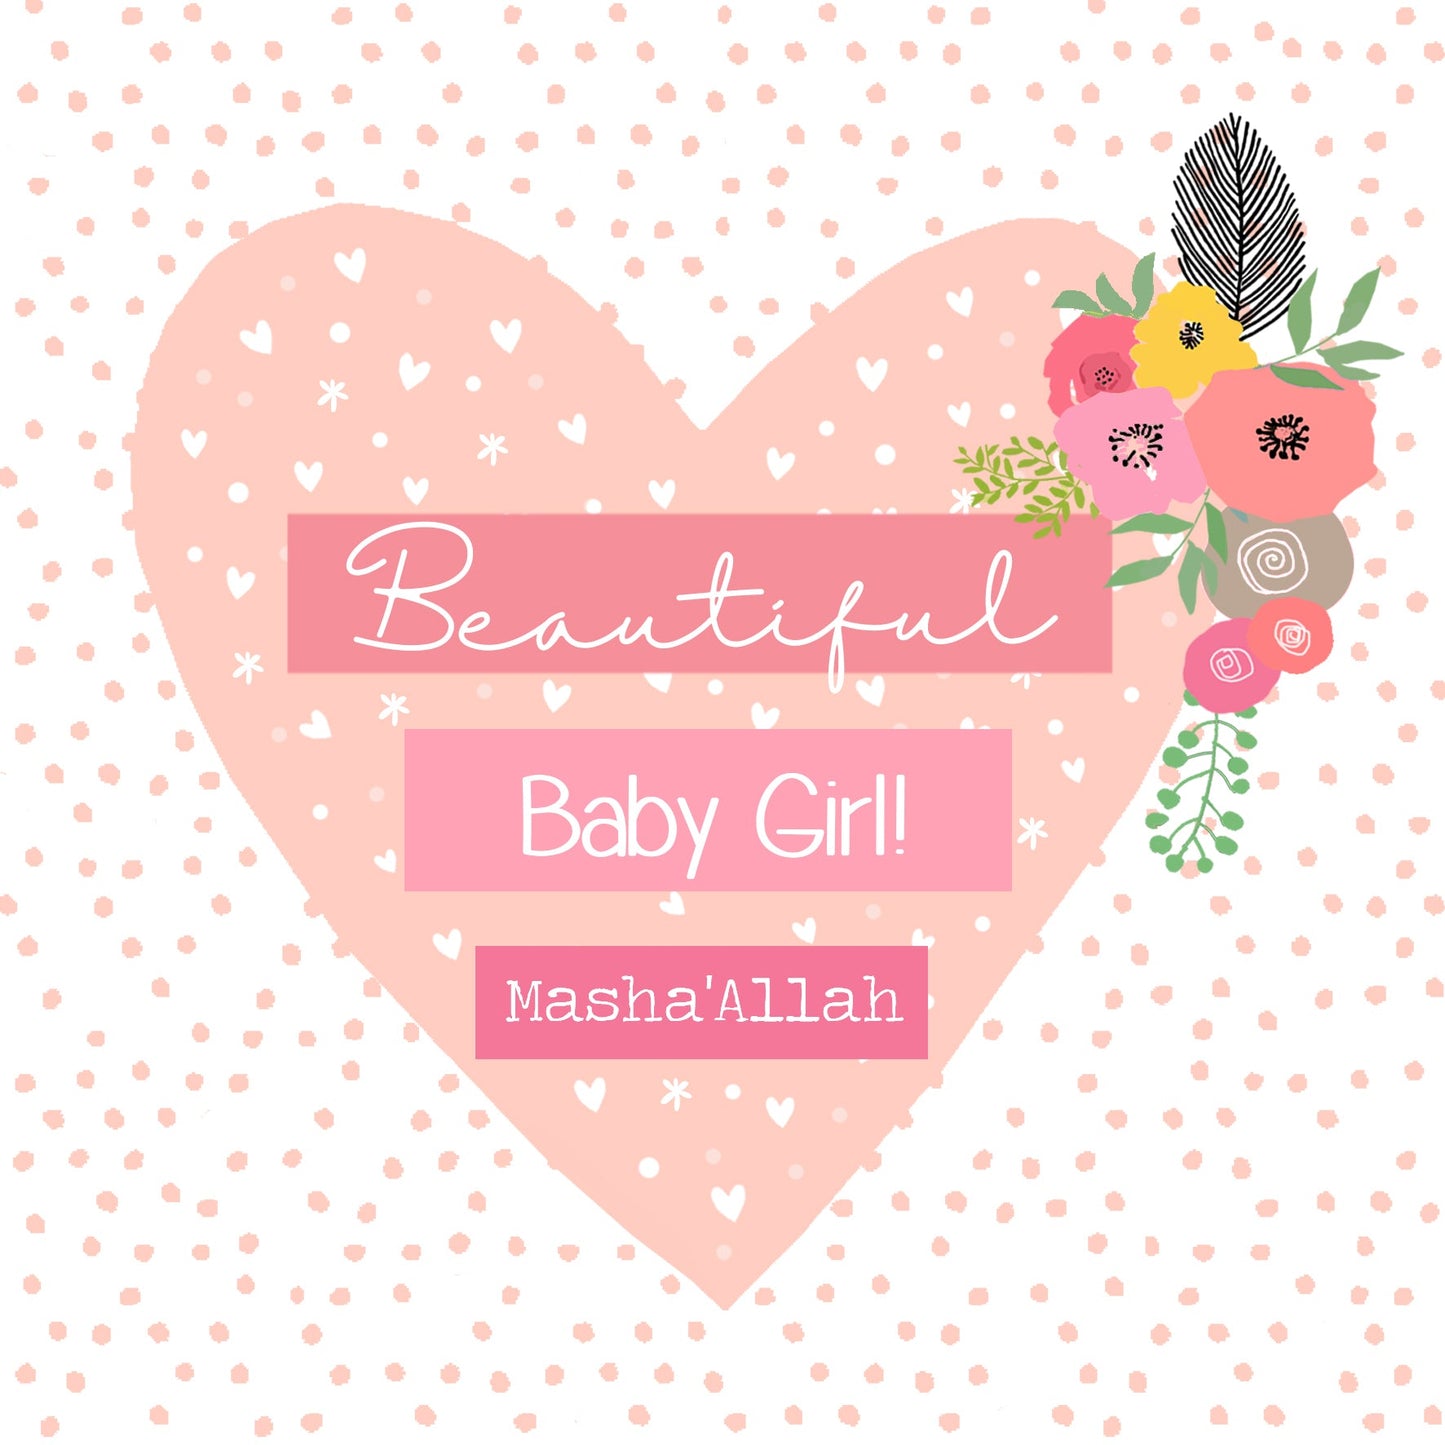 Masha'Allah Baby Girl Card - Pink Heart